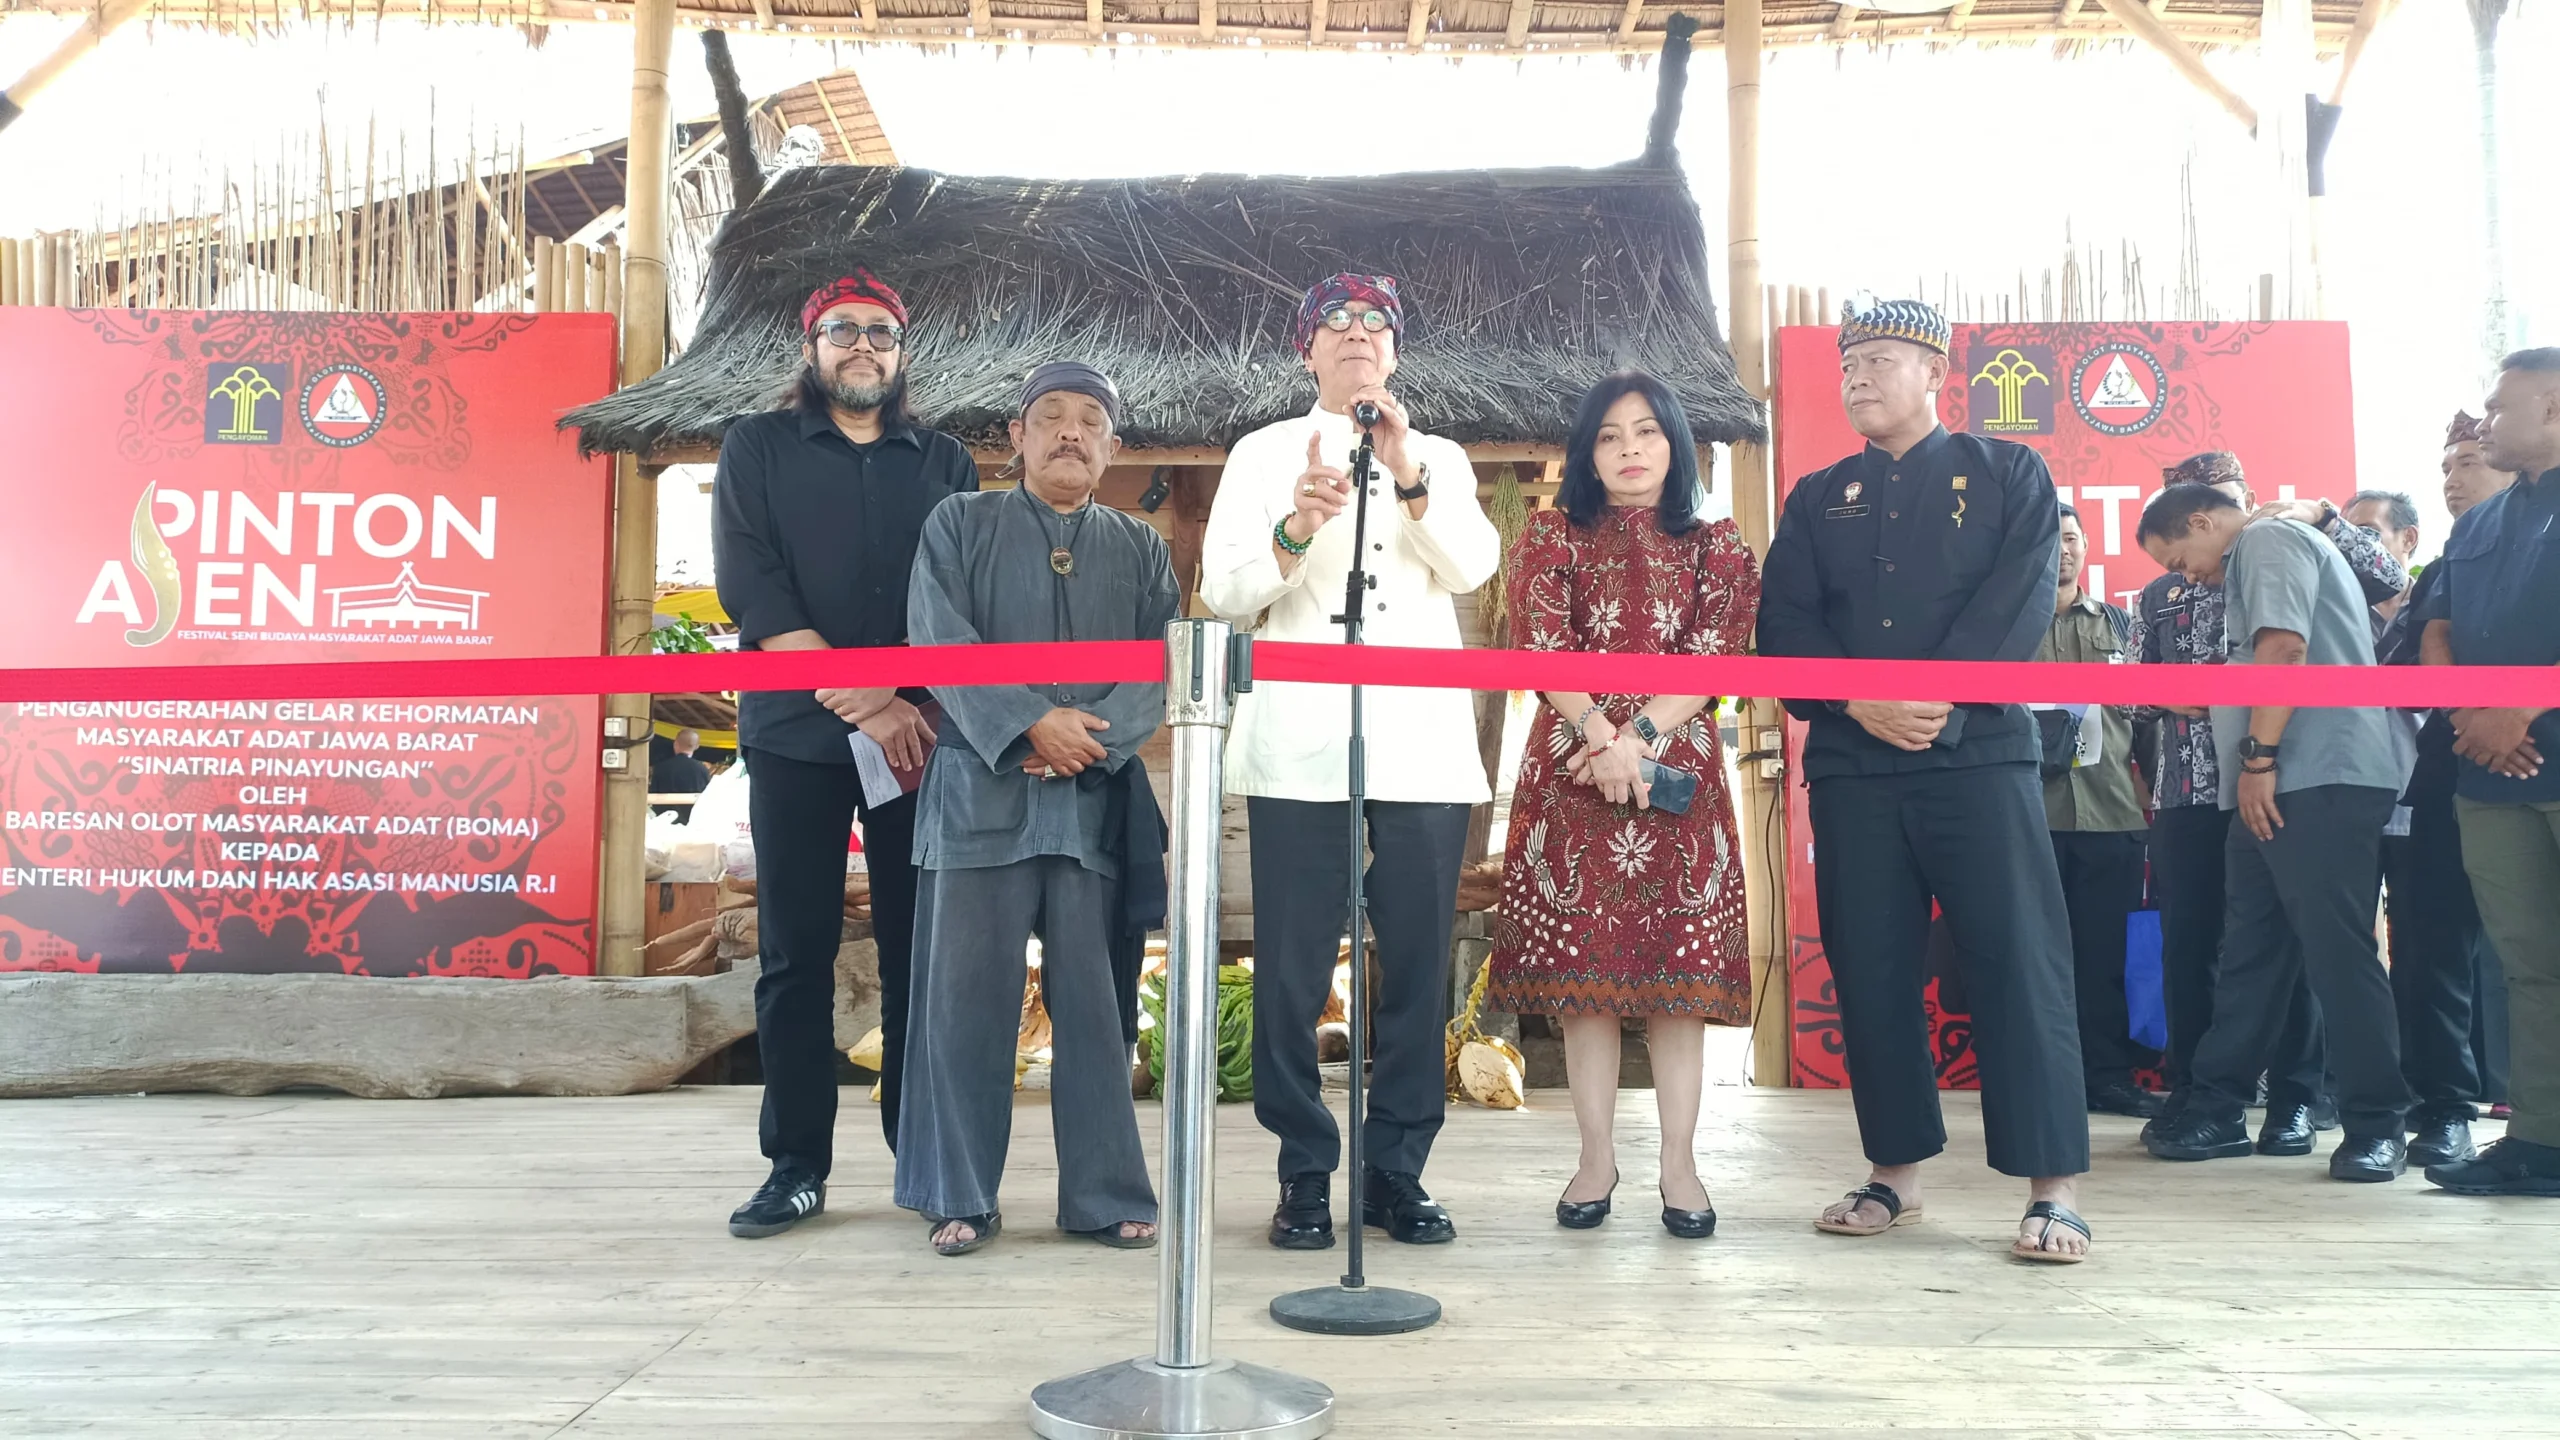 Menteri Hukum dan Hak Asasi Manusia, Yasonna H Laoly saat penganugerahan gelar kehormatan masyarakat adat Jawa Barat sebagai Sinatria Pinayungan dari Baresan Olot Masyarakat Adat (BOMA)